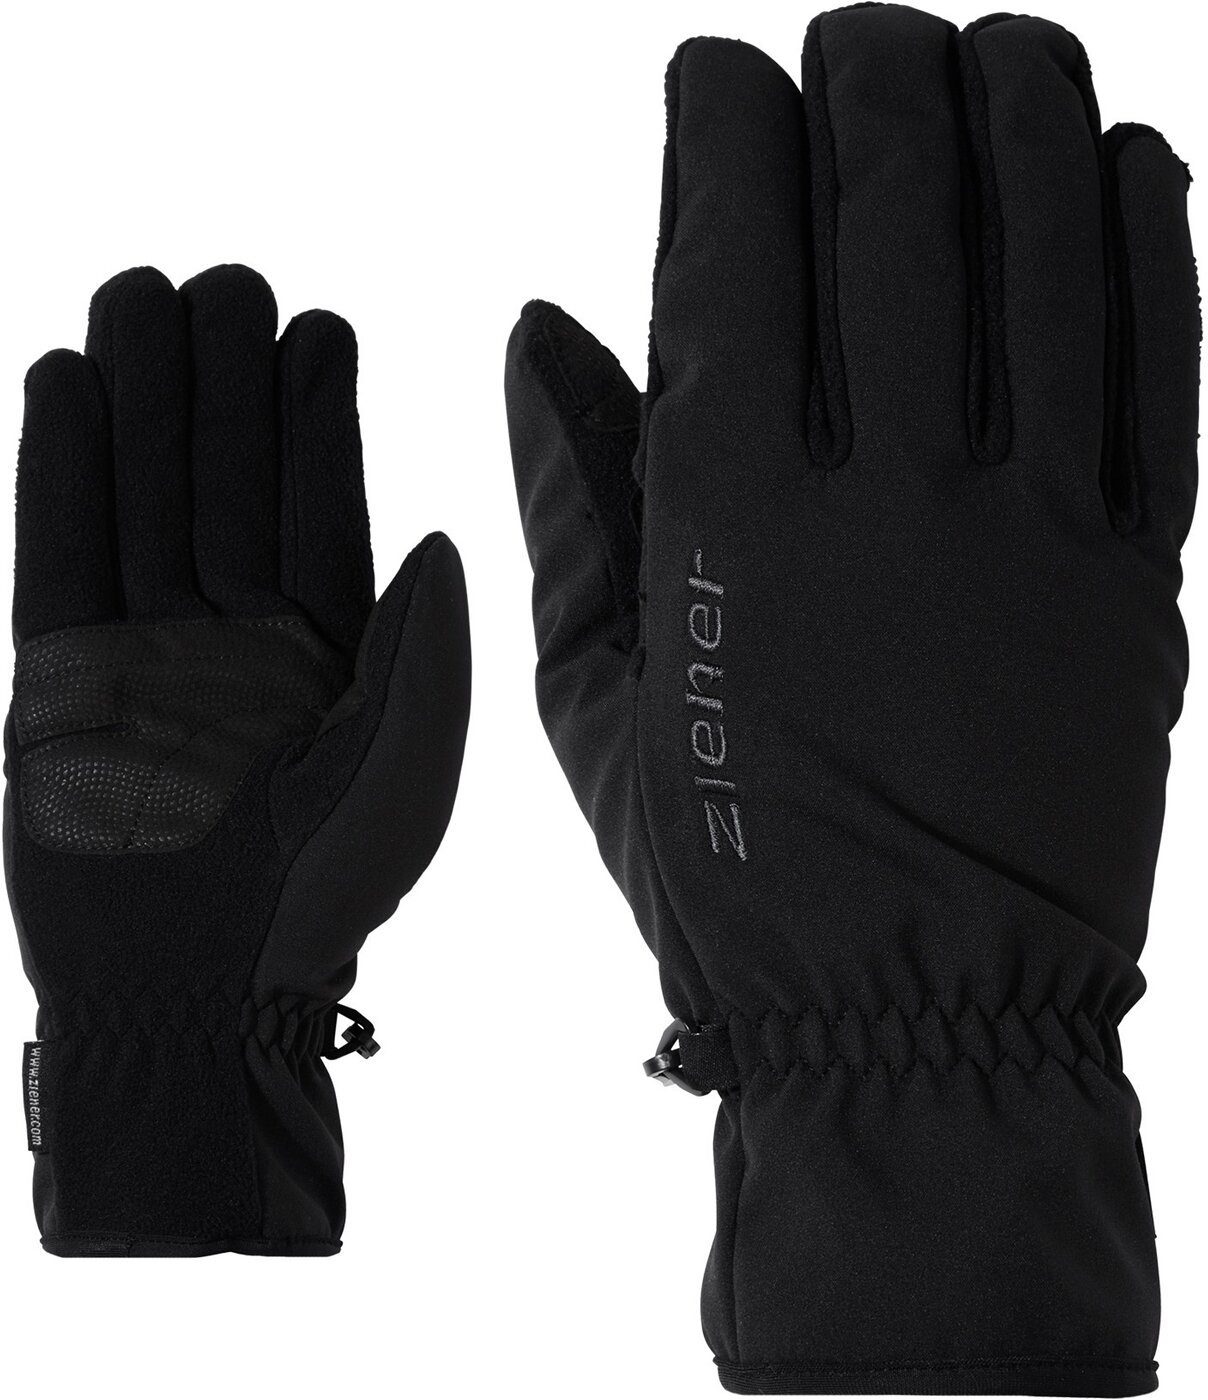 Ziener Multisporthandschuhe IMPORT glove multisport BLACK